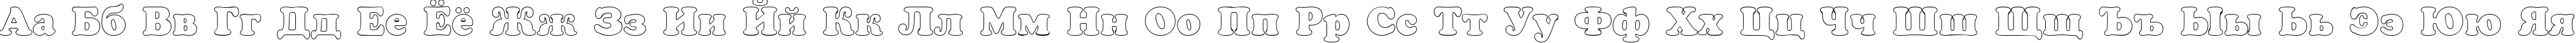 Пример написания русского алфавита шрифтом a_CooperBlackOtl